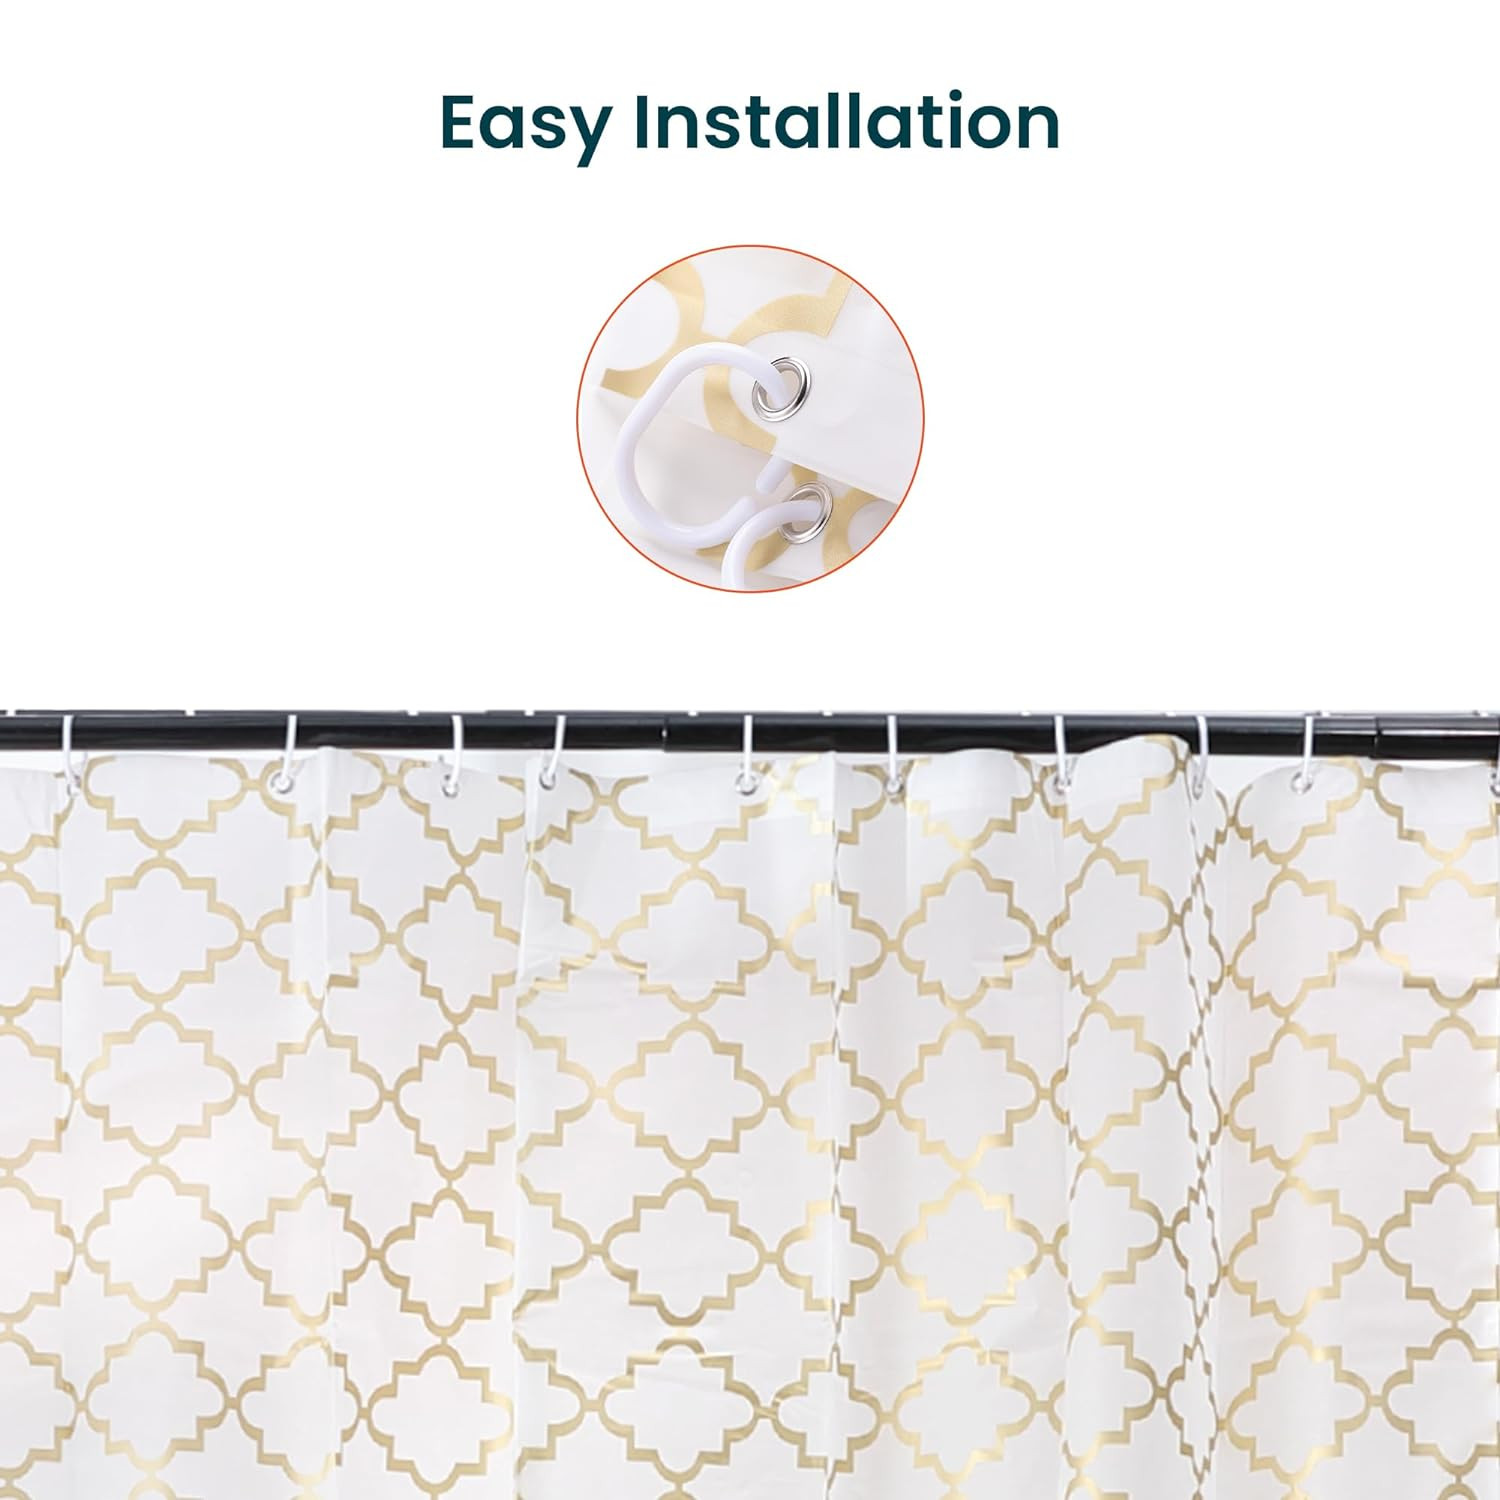 Kuber IndustriesSoft Texture Bath curtain|Natural Drape Waterproof Shower Curtain 6 Feet|Gold